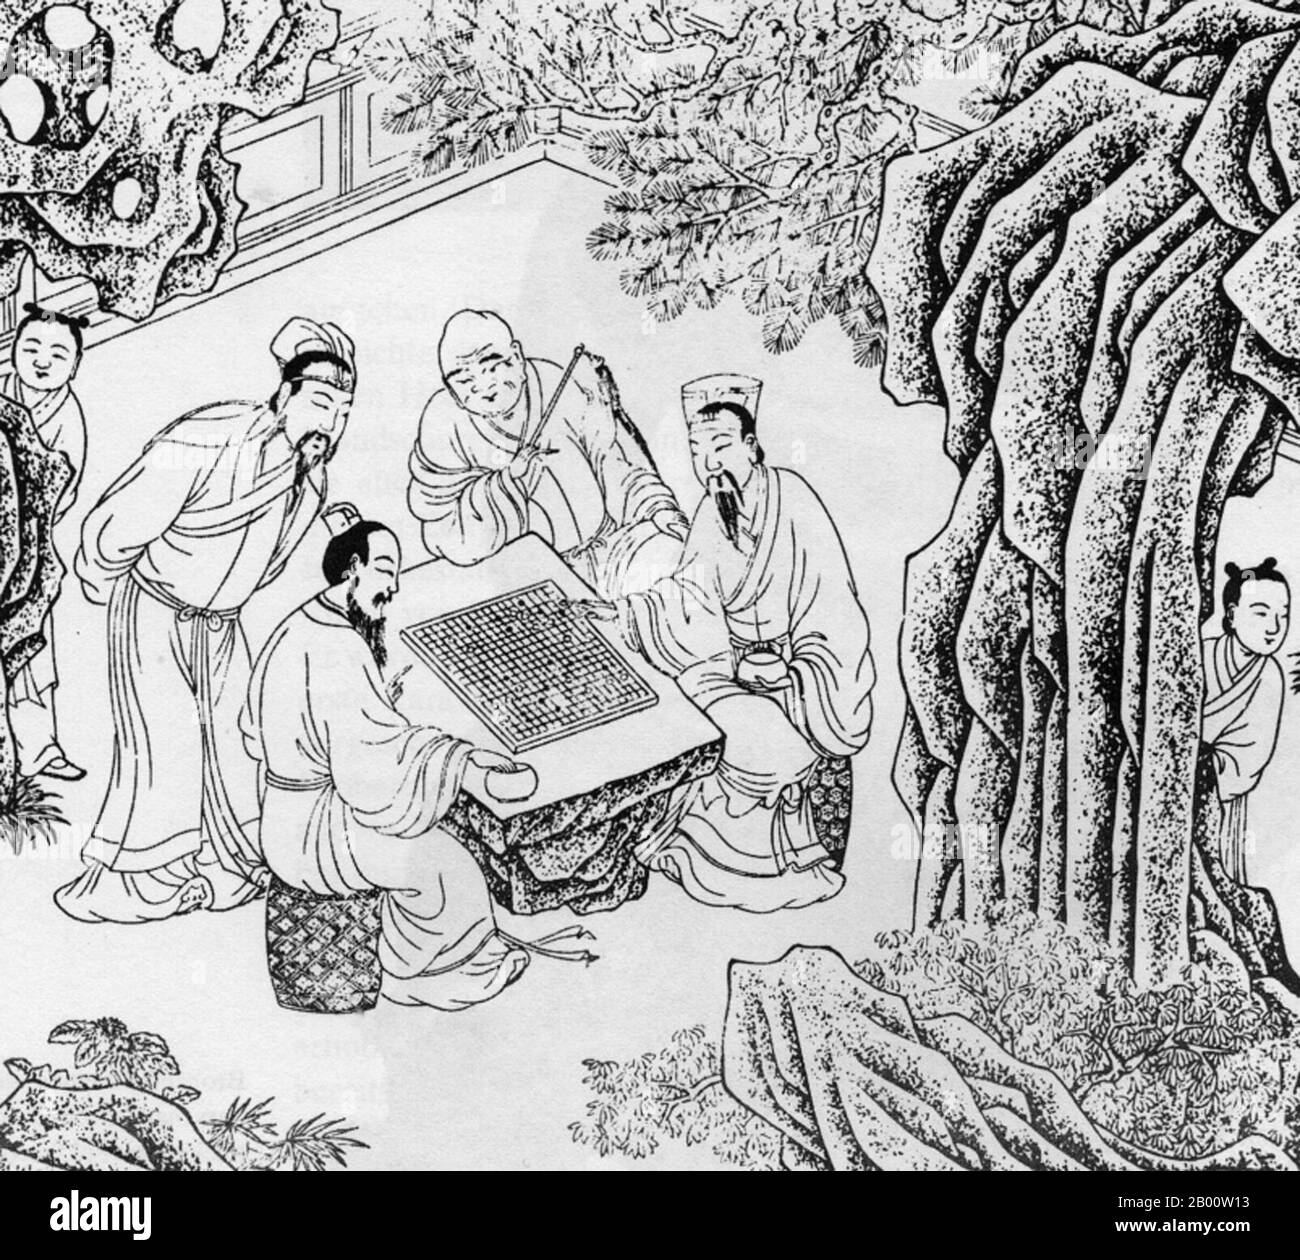 Chine: Hommes jouant un jeu de 'Go' en Chine impériale, probablement la dynastie Ming (1368-1644). Go (nom japonais), connu sous le nom de 'weiqi' en chinois et de 'baduk' en coréen, est un ancien jeu de société pour deux joueurs qui est connu pour être riche en stratégie malgré ses règles relativement simples. Banque D'Images